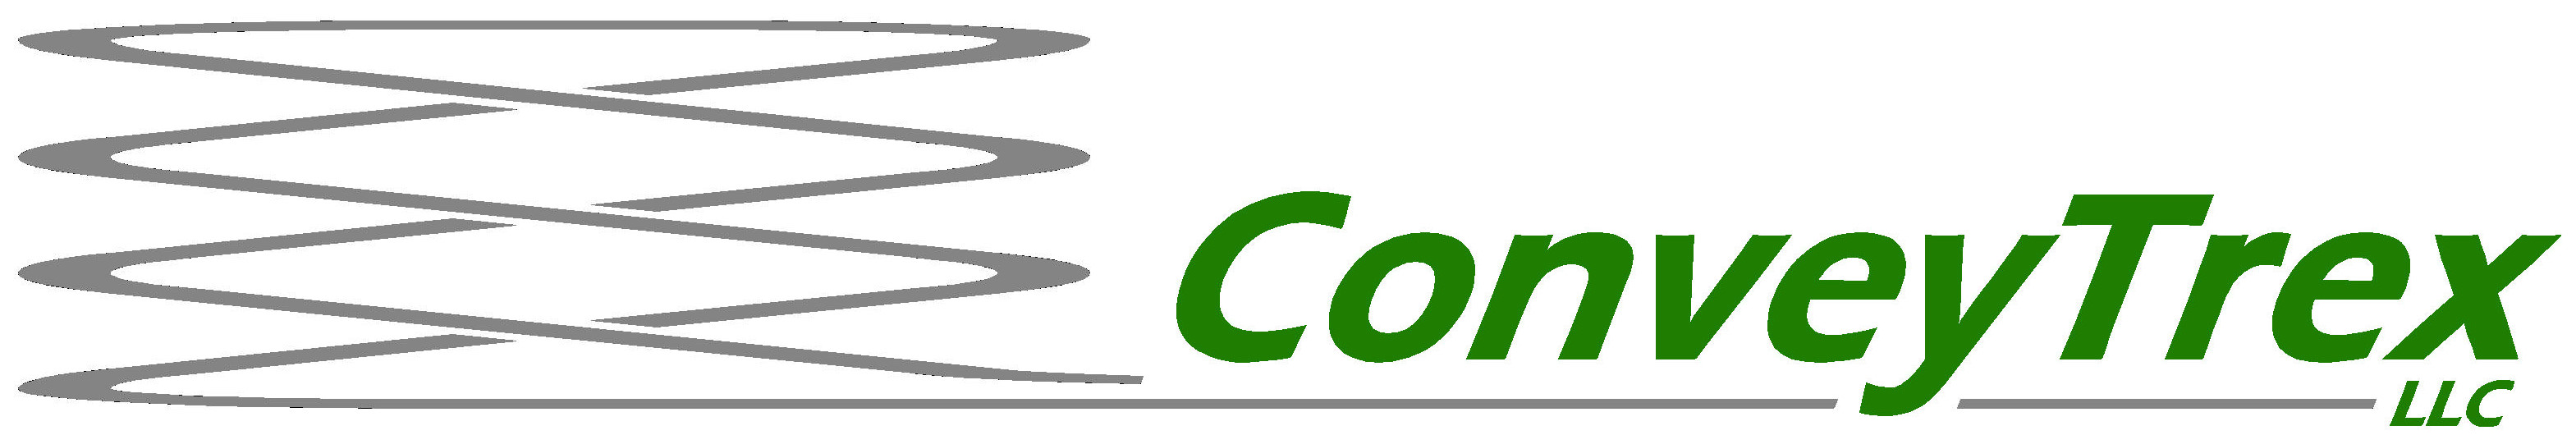 ConveyTrex LLC